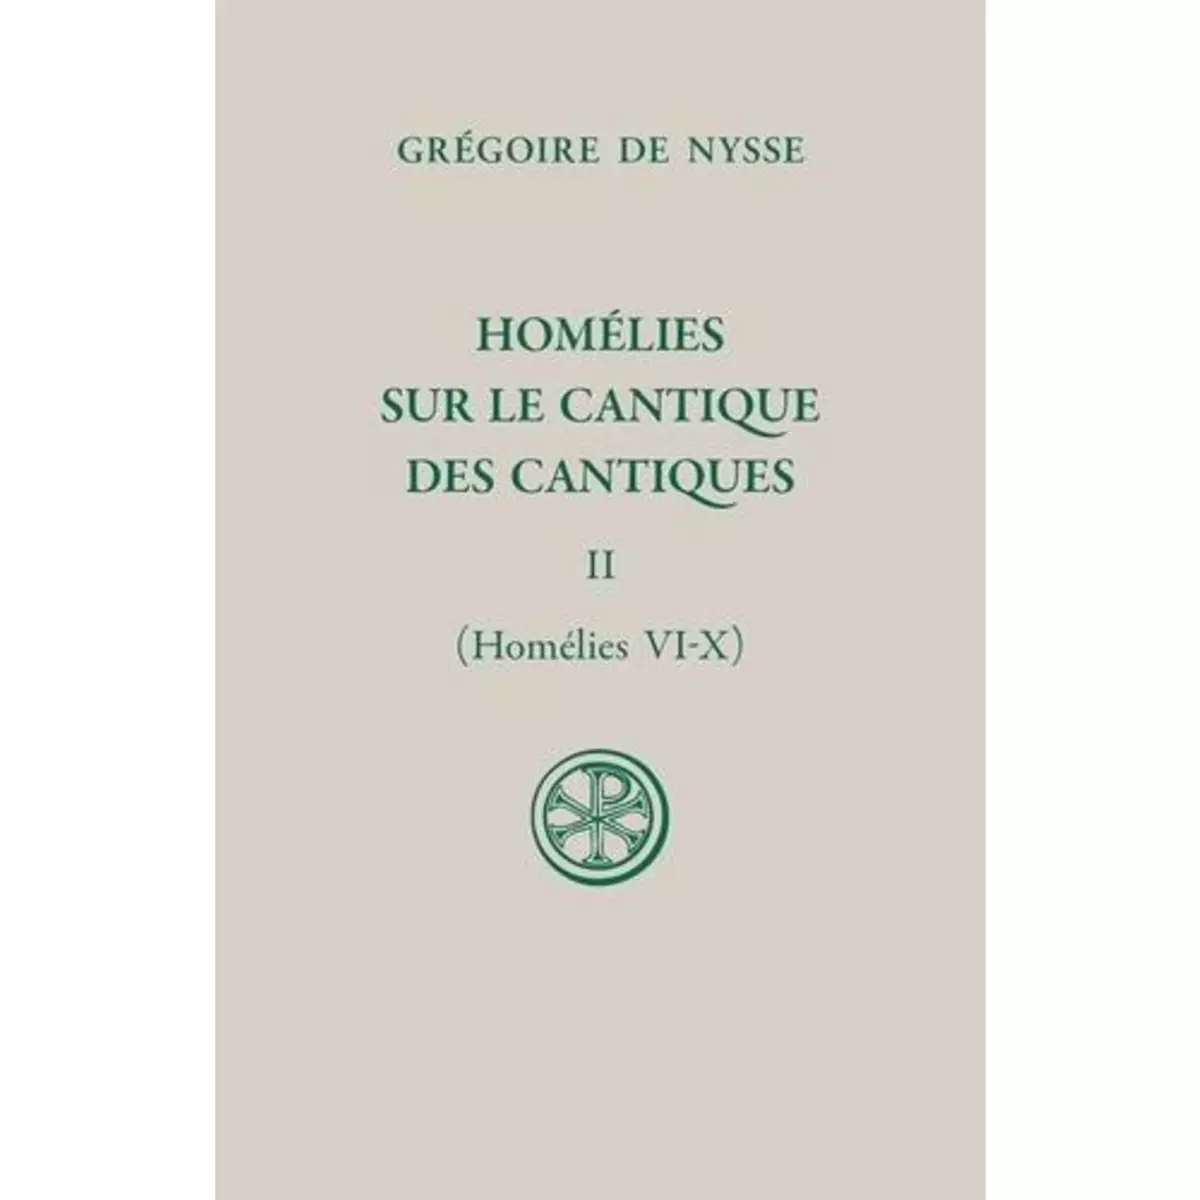  HOMELIES SUR LE CANTIQUE DES CANTIQUES. TOME II (HOMELIES VI-X), EDITION BILINGUE FRANCAIS-GREC ANCIEN, Nysse Grégoire de